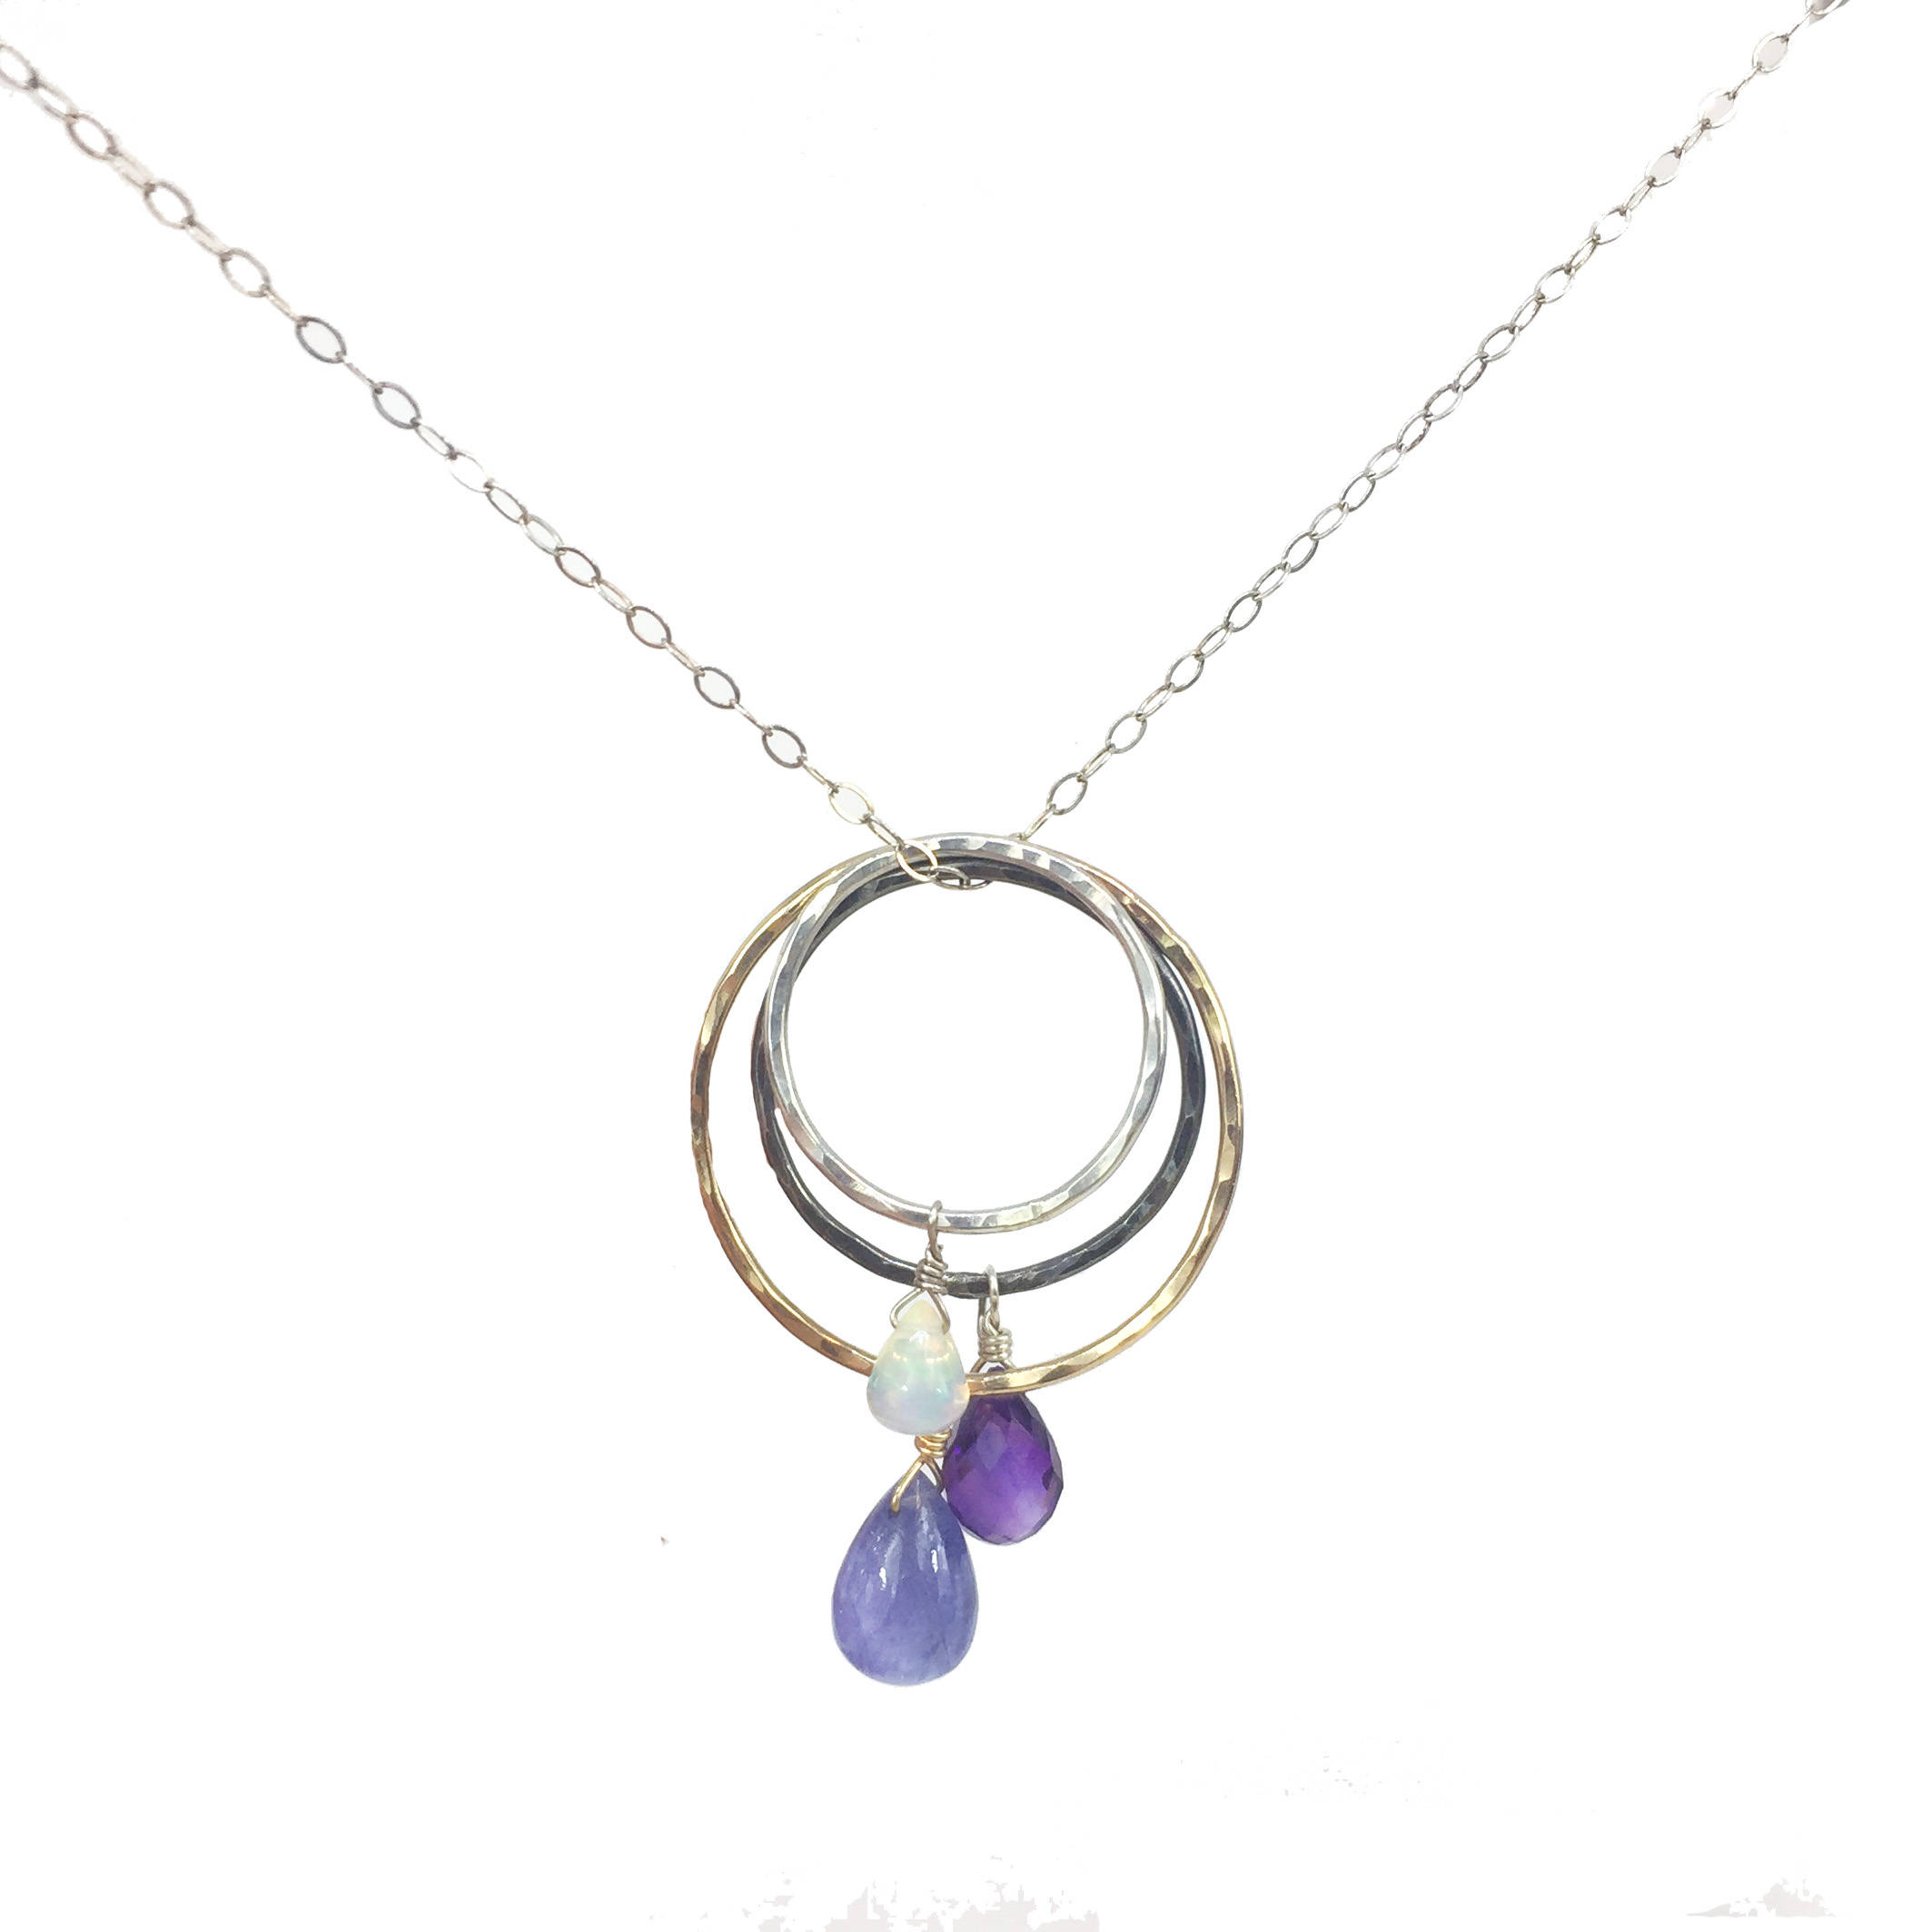 Gemstone pendant necklace purple gemstone necklace February